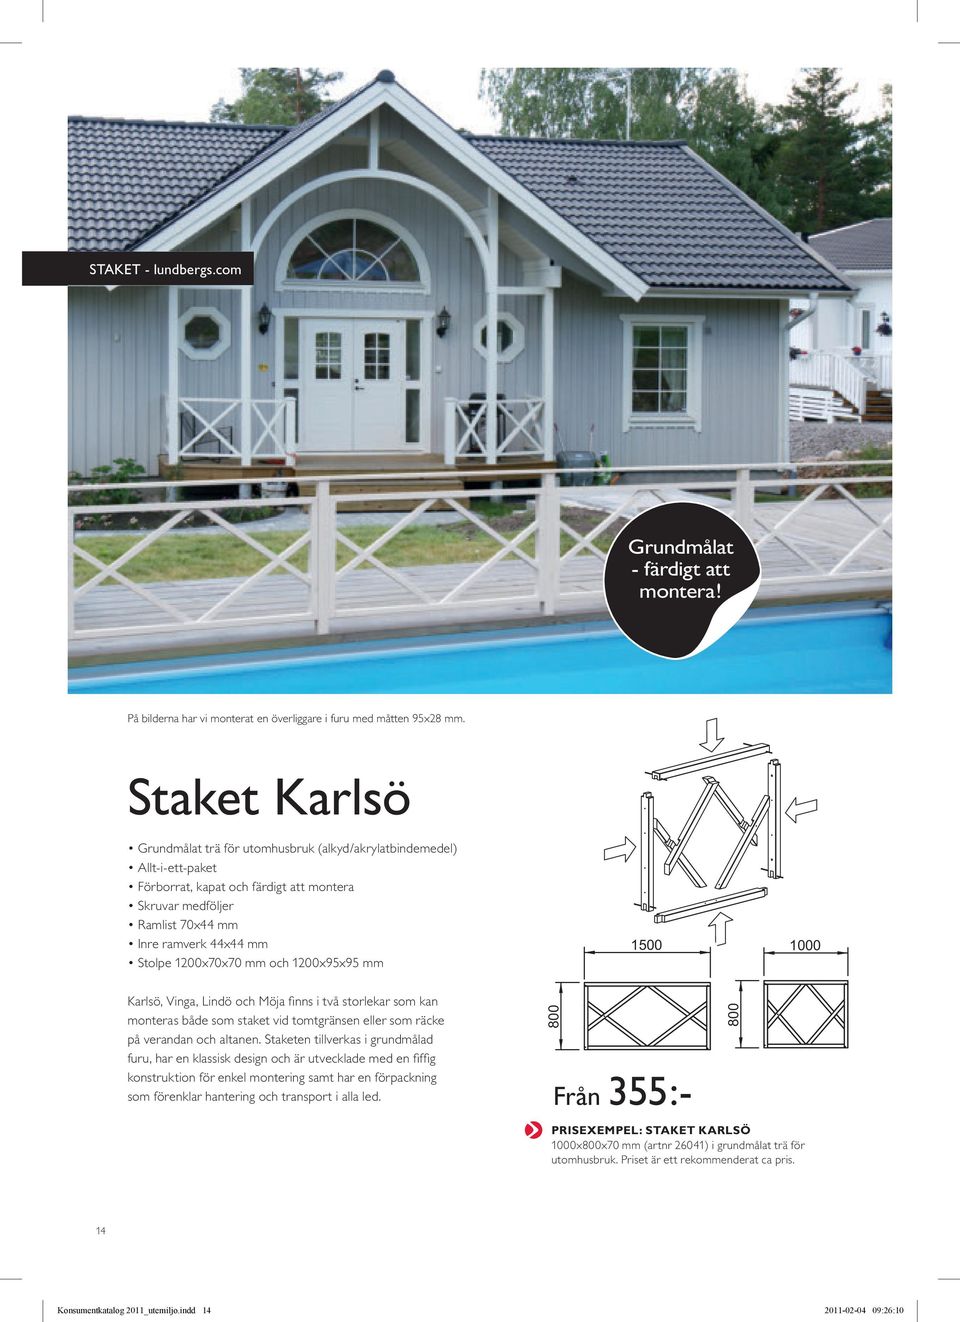 1200x70x70 mm och 1200x95x95 mm 800 1500 1000 Karlsö, Vinga, Lindö och Möja finns i två storlekar som kan monteras både som staket vid tomtgränsen eller som räcke på verandan och altanen.